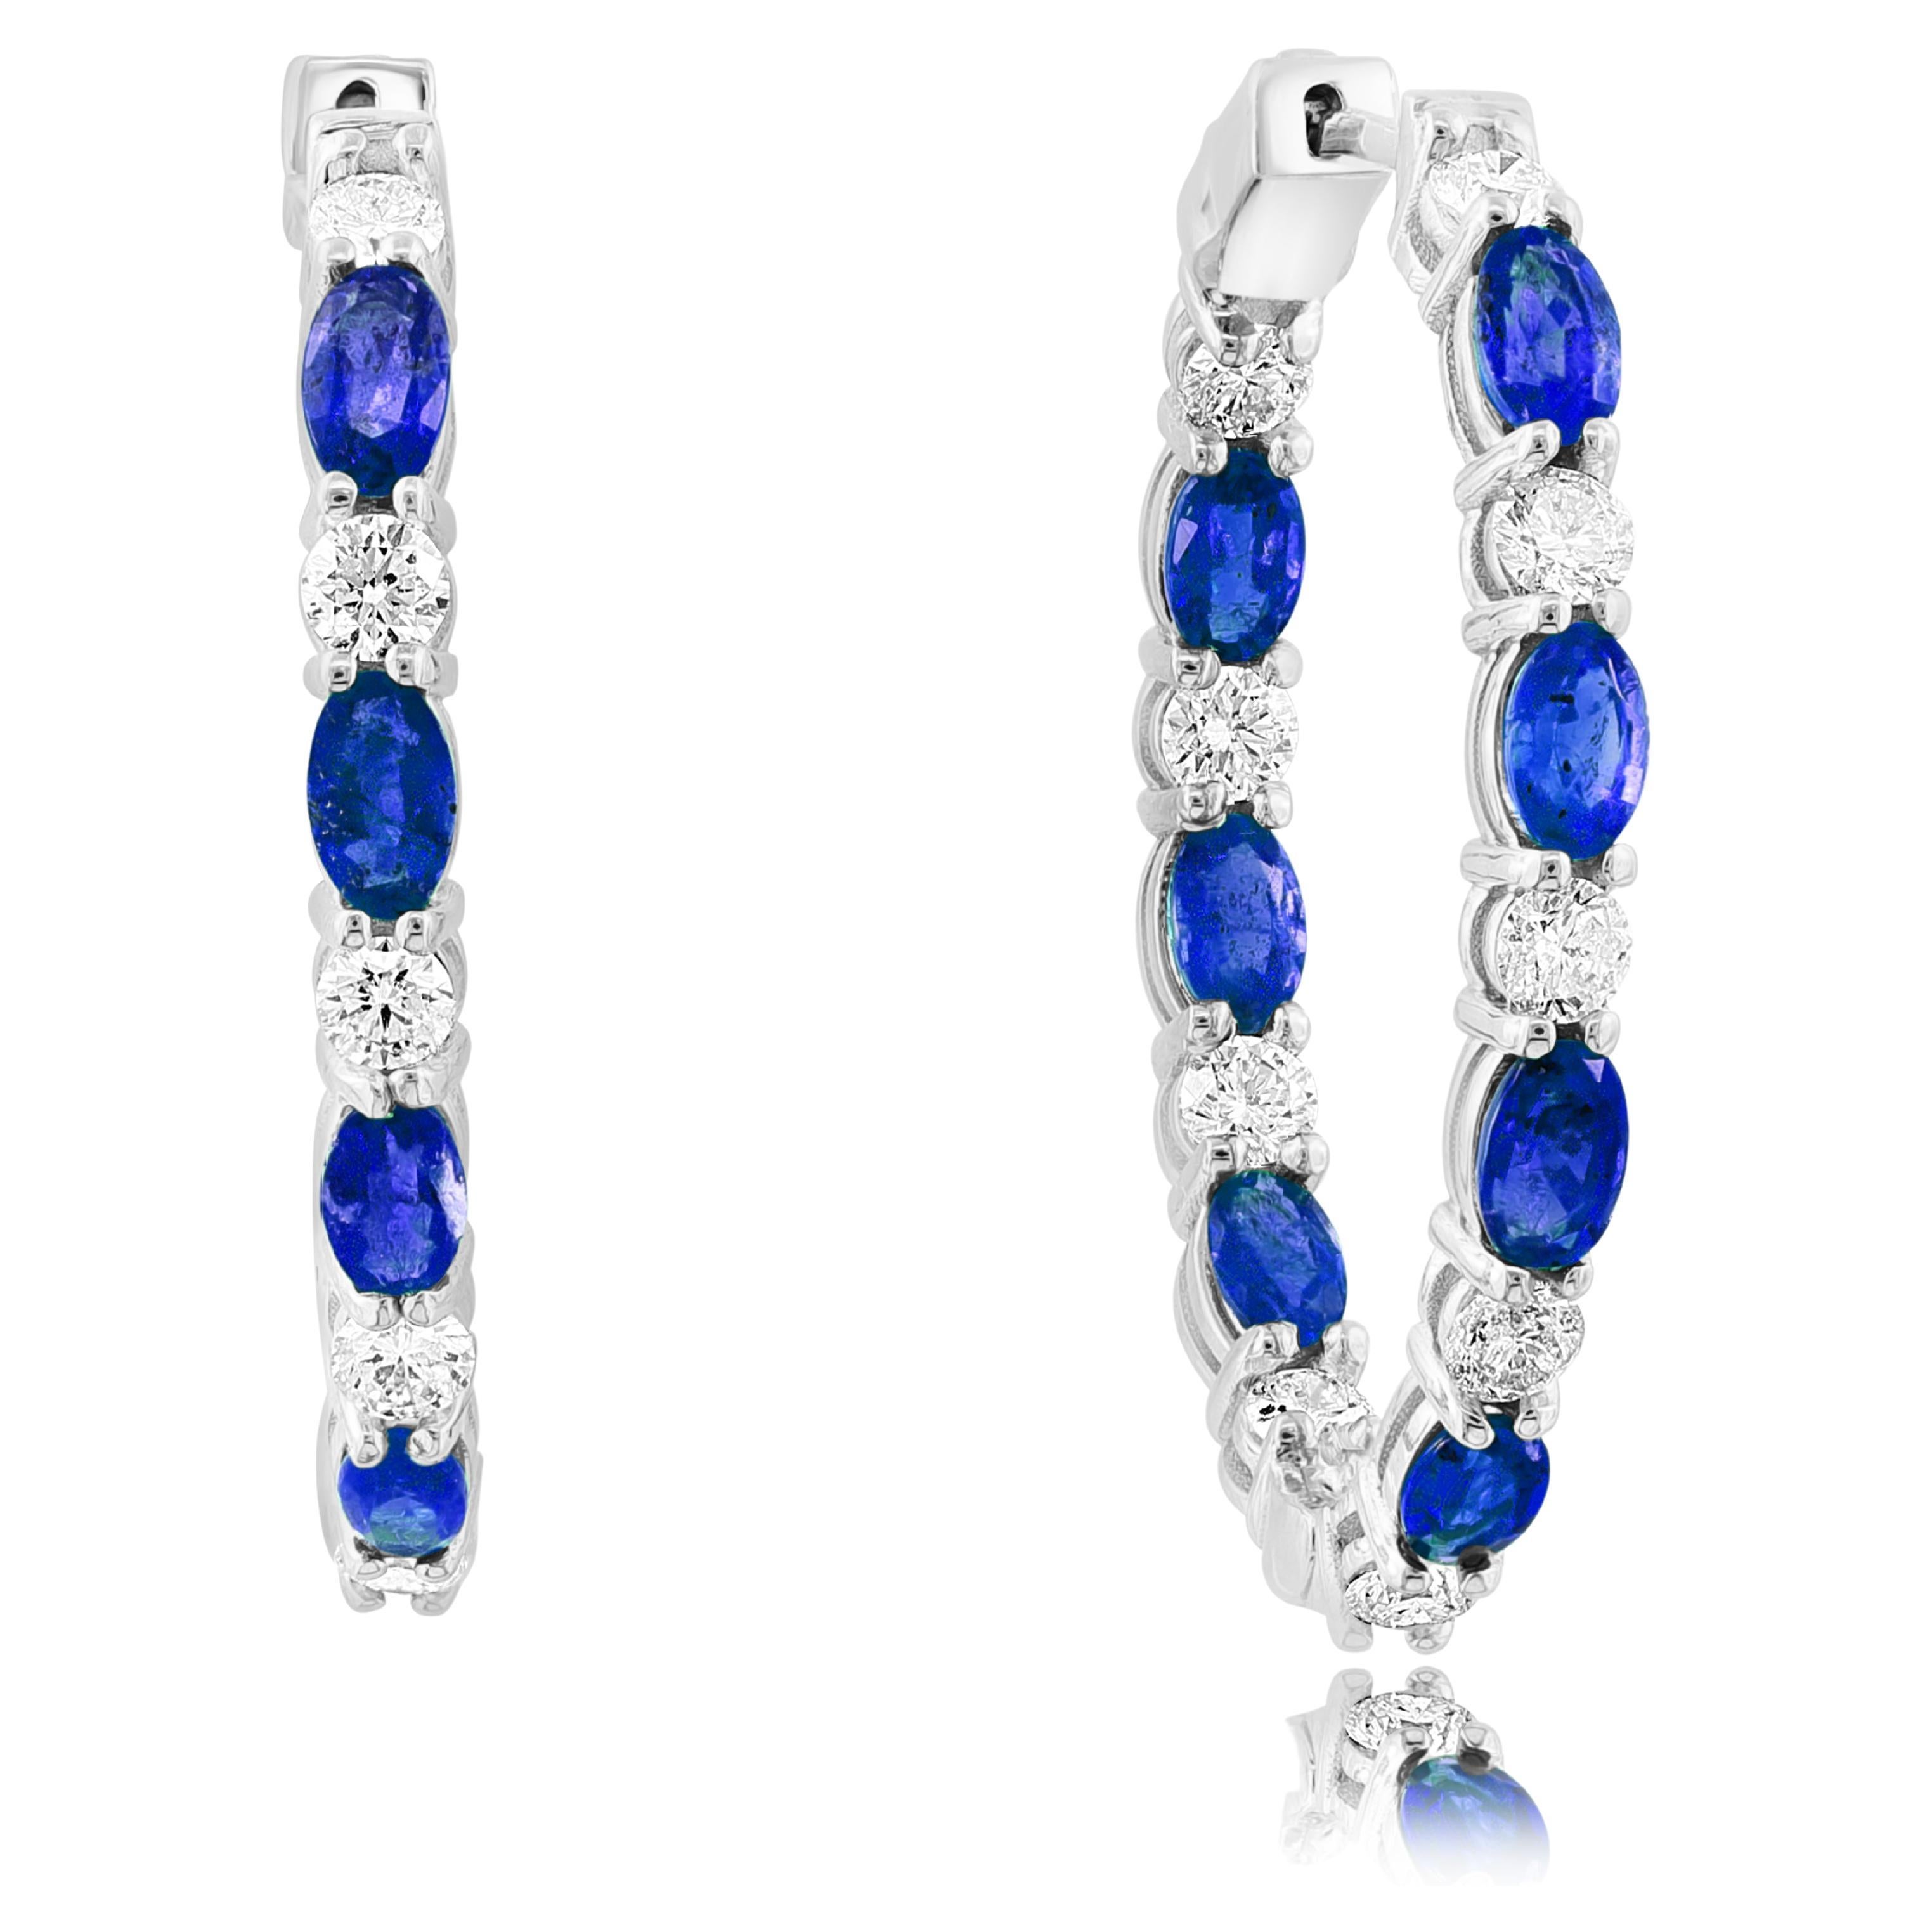 4.13 Carat Oval Cut Blue Sapphire Diamond Hoop Earrings in 14K White Gold